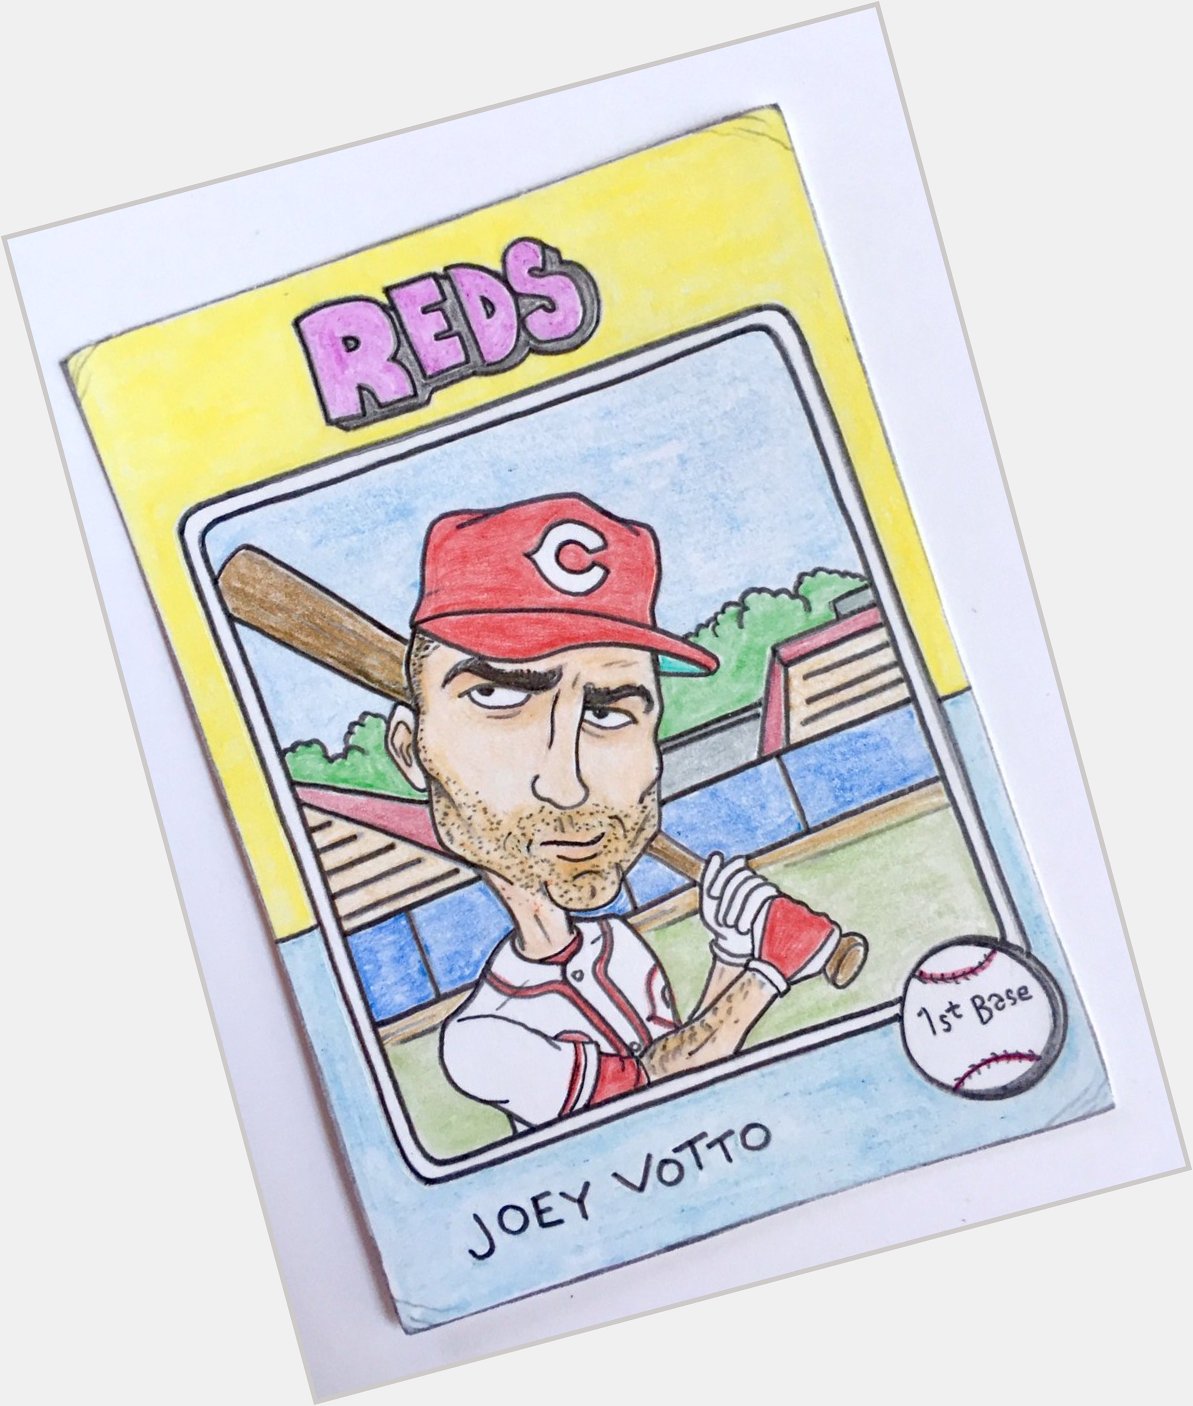 Happy birthday, Joey Votto! 